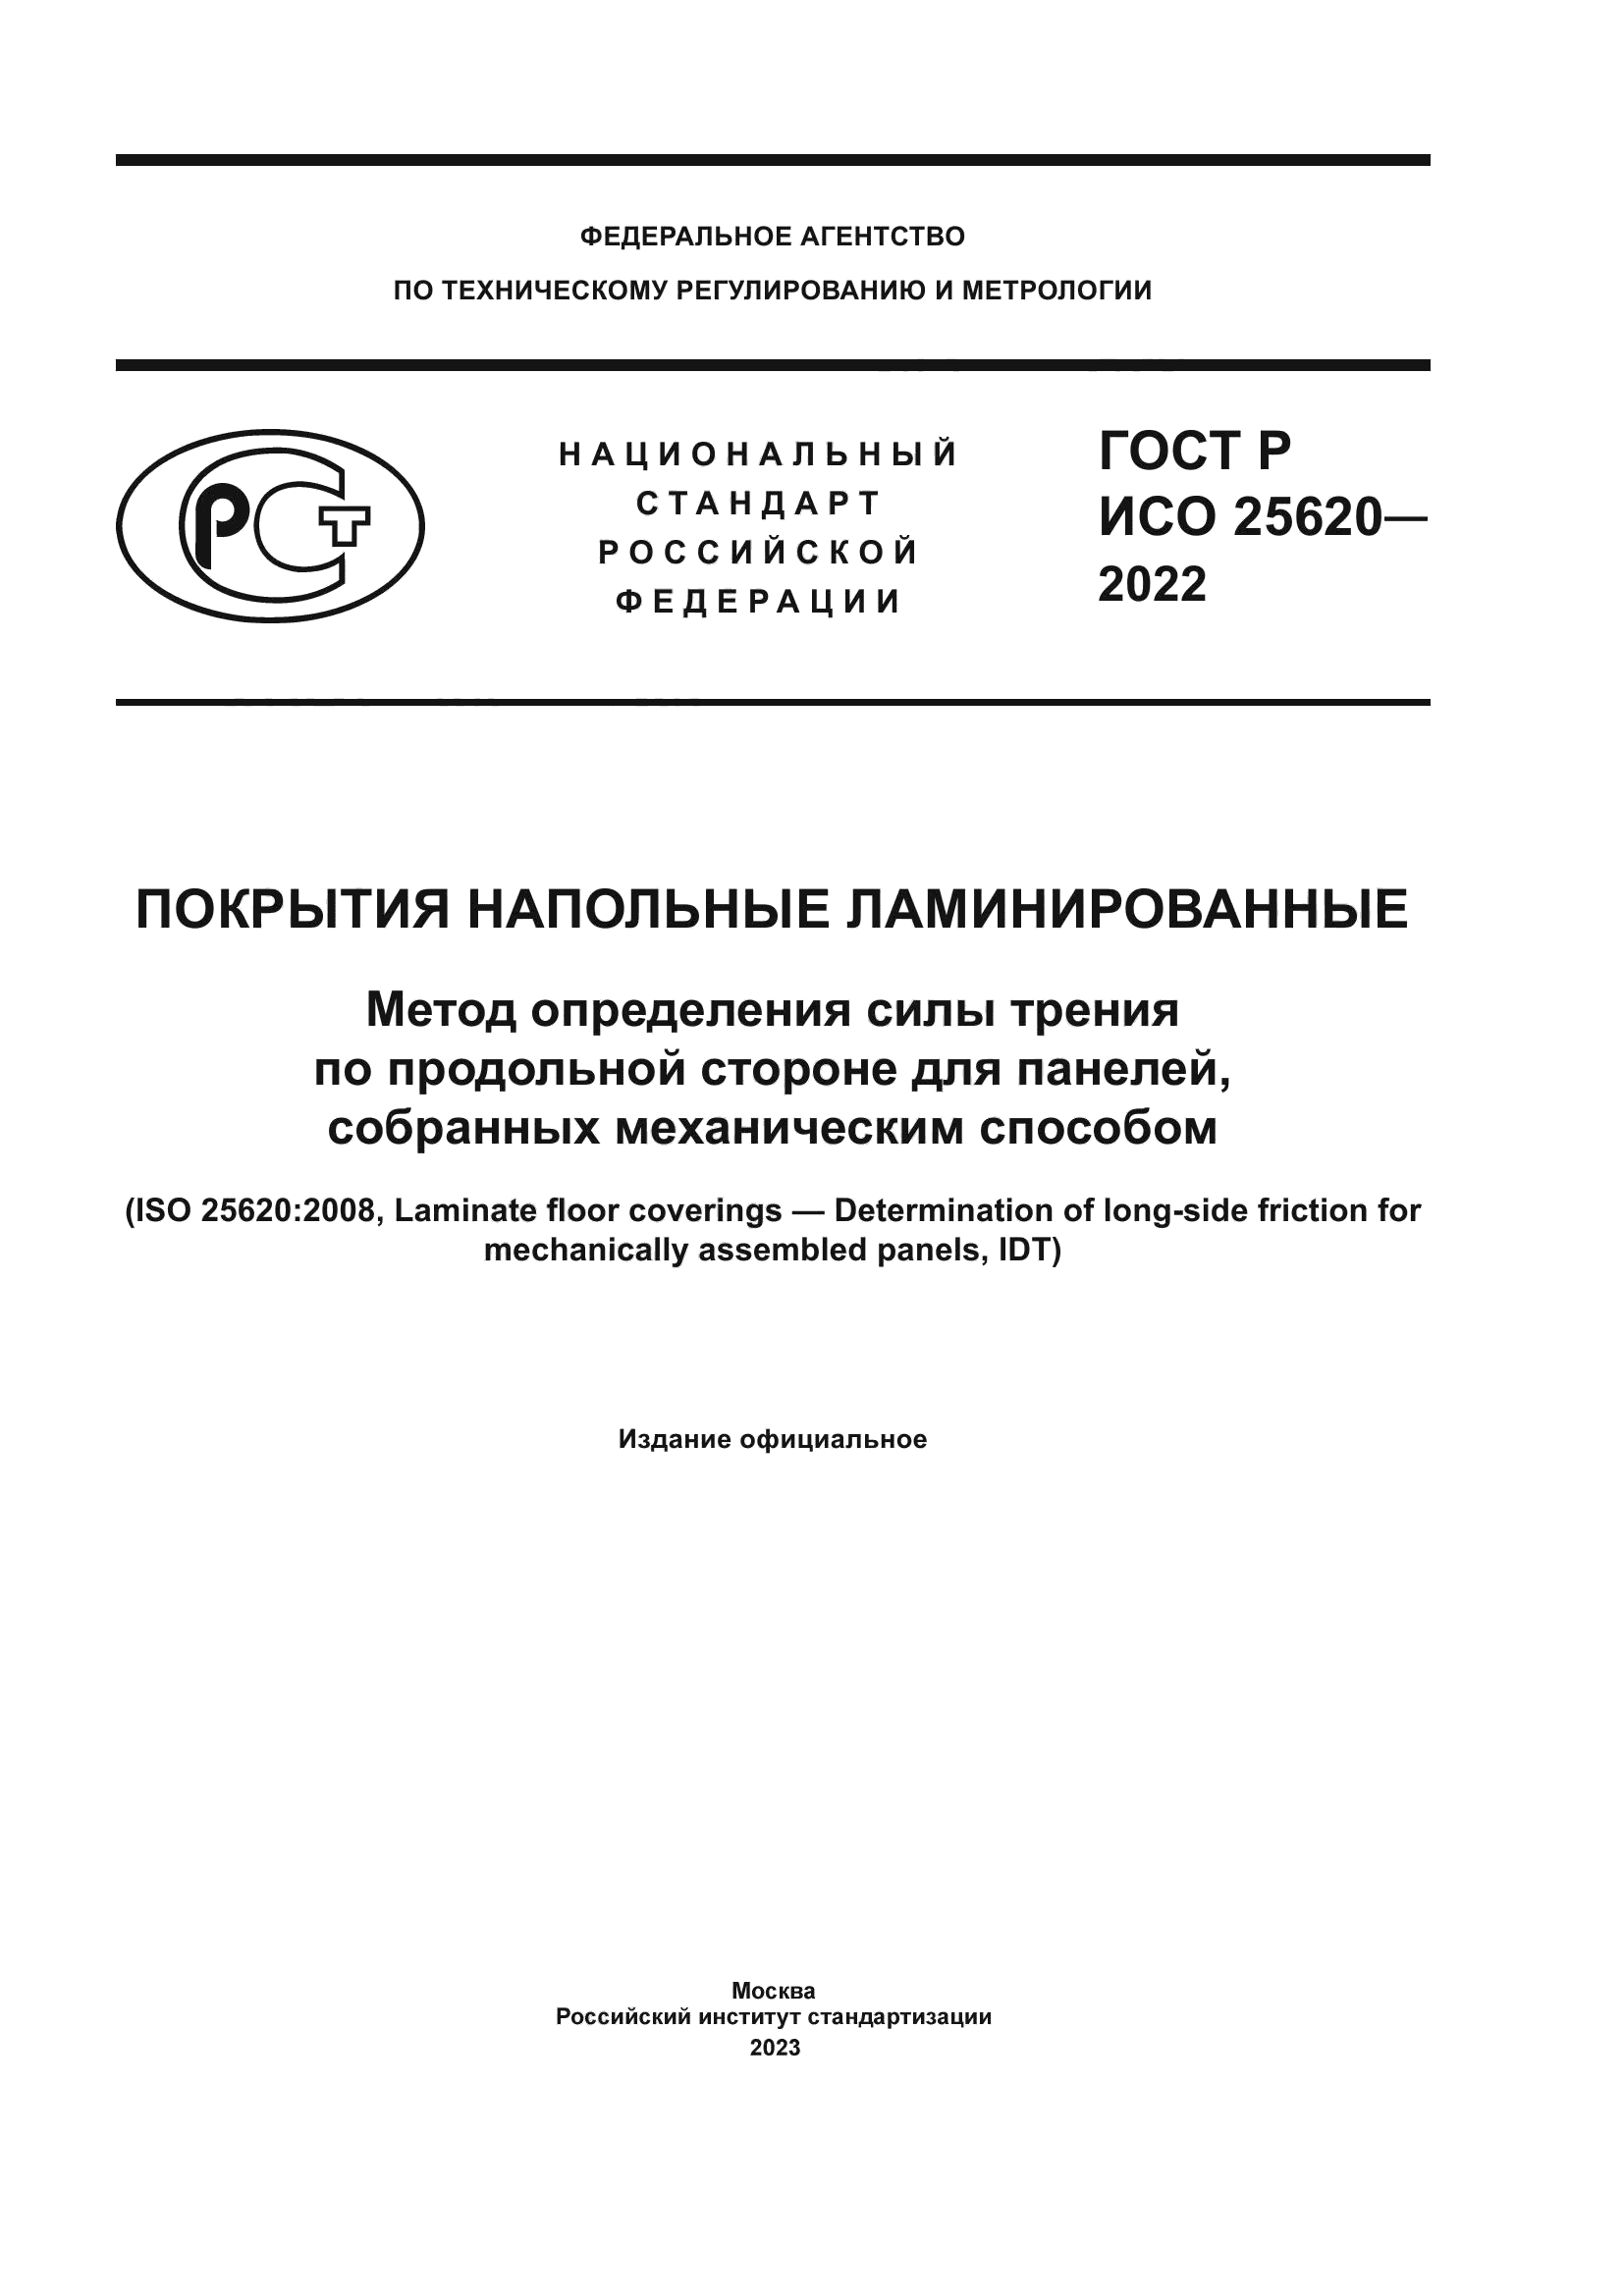 ГОСТ Р ИСО 25620-2022